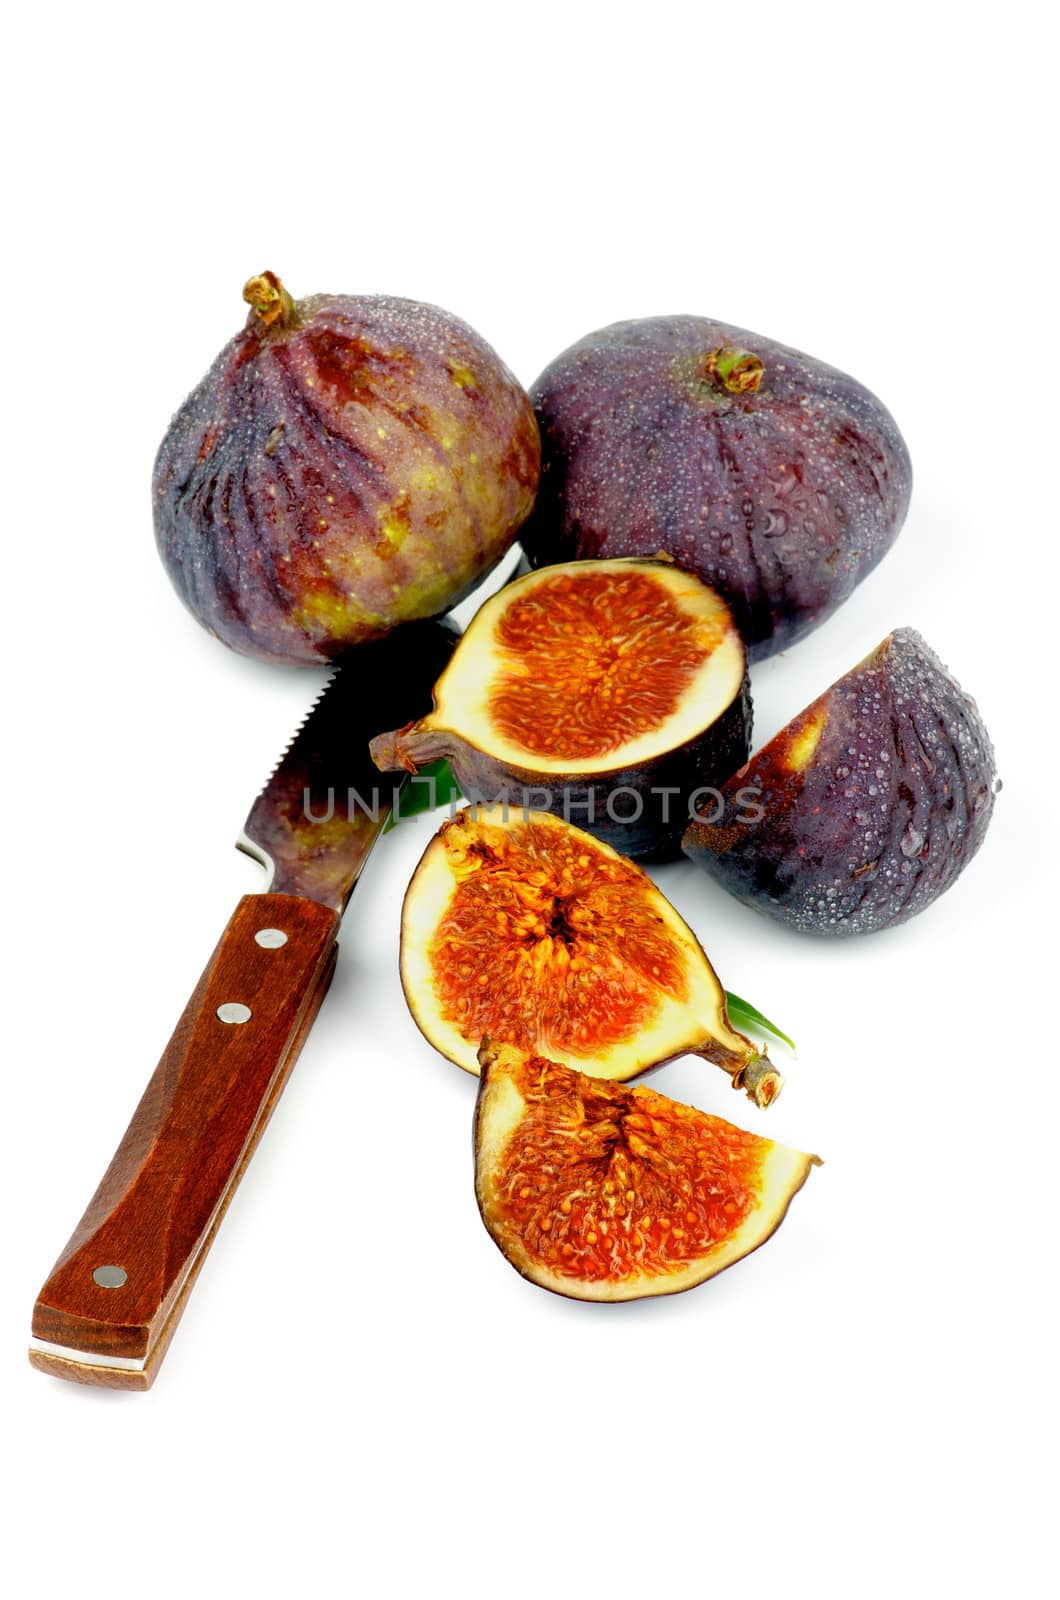 Figs by zhekos